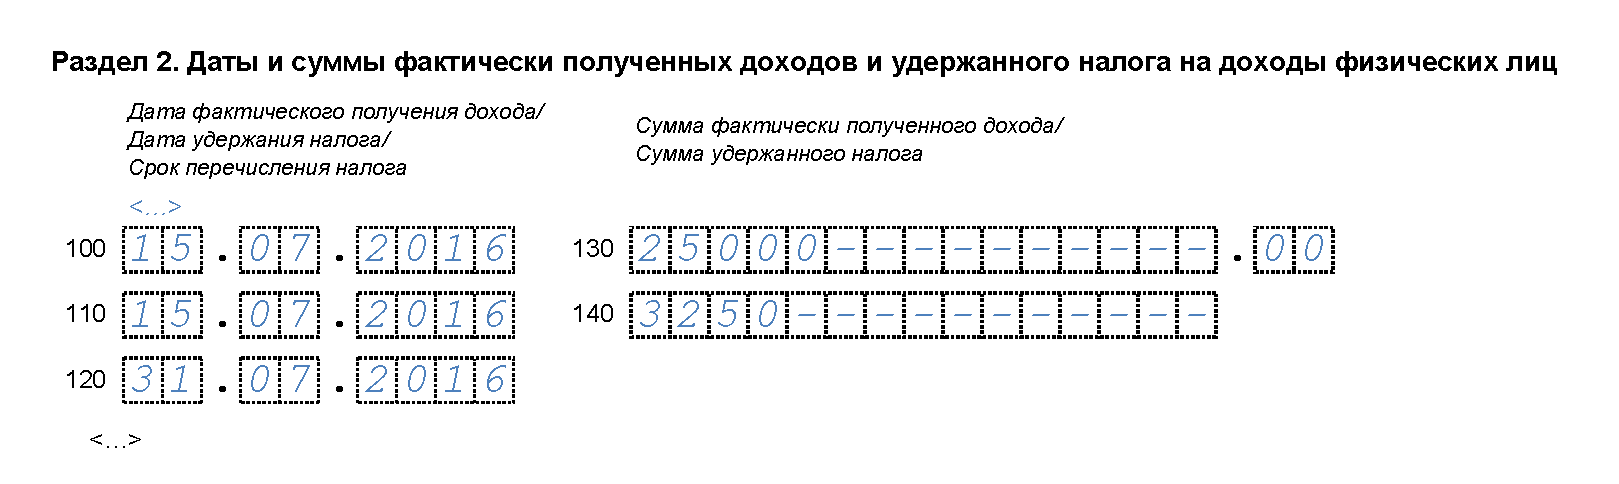 primer-zapolneniya-6-ndfl-za-3-kvartal-s-otpusknymi-2